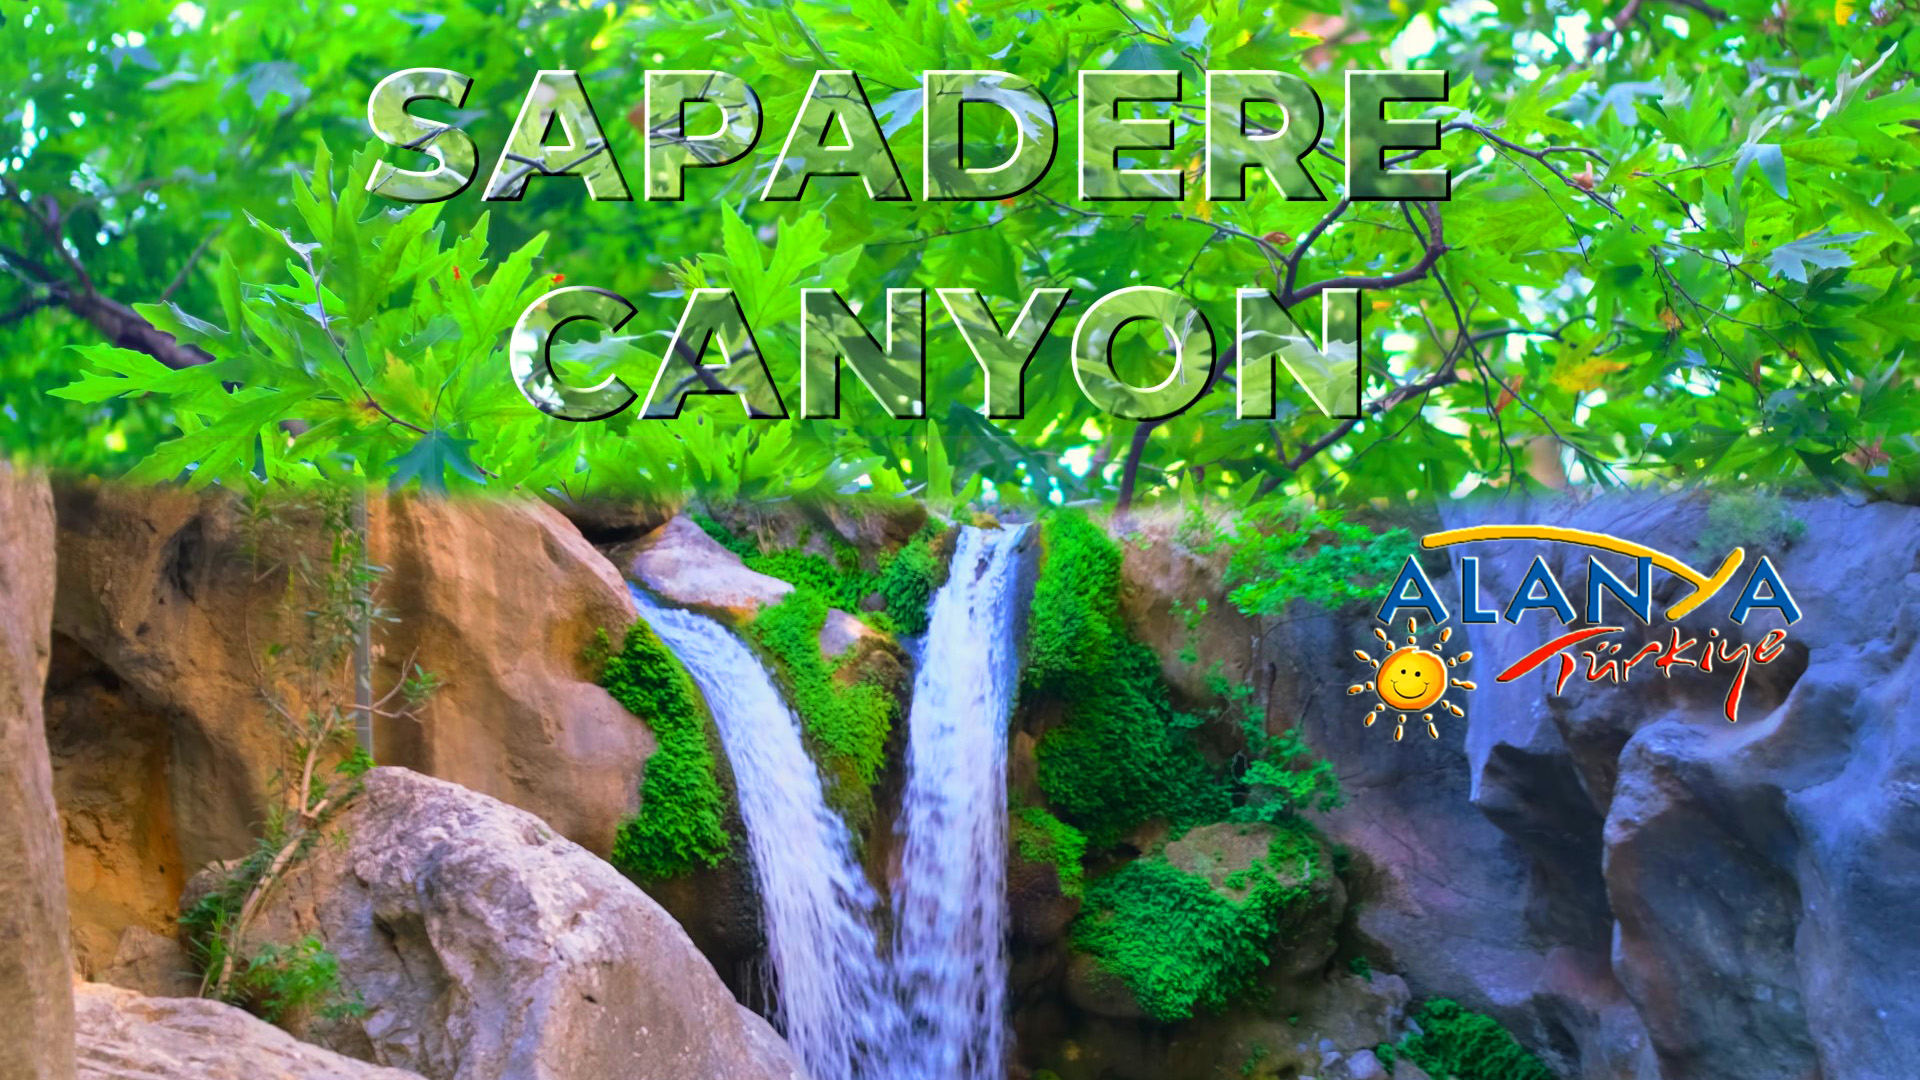 Сападере (Sapadere) каньон - одно из красивейших ущелий и достопримечательностей Алании.